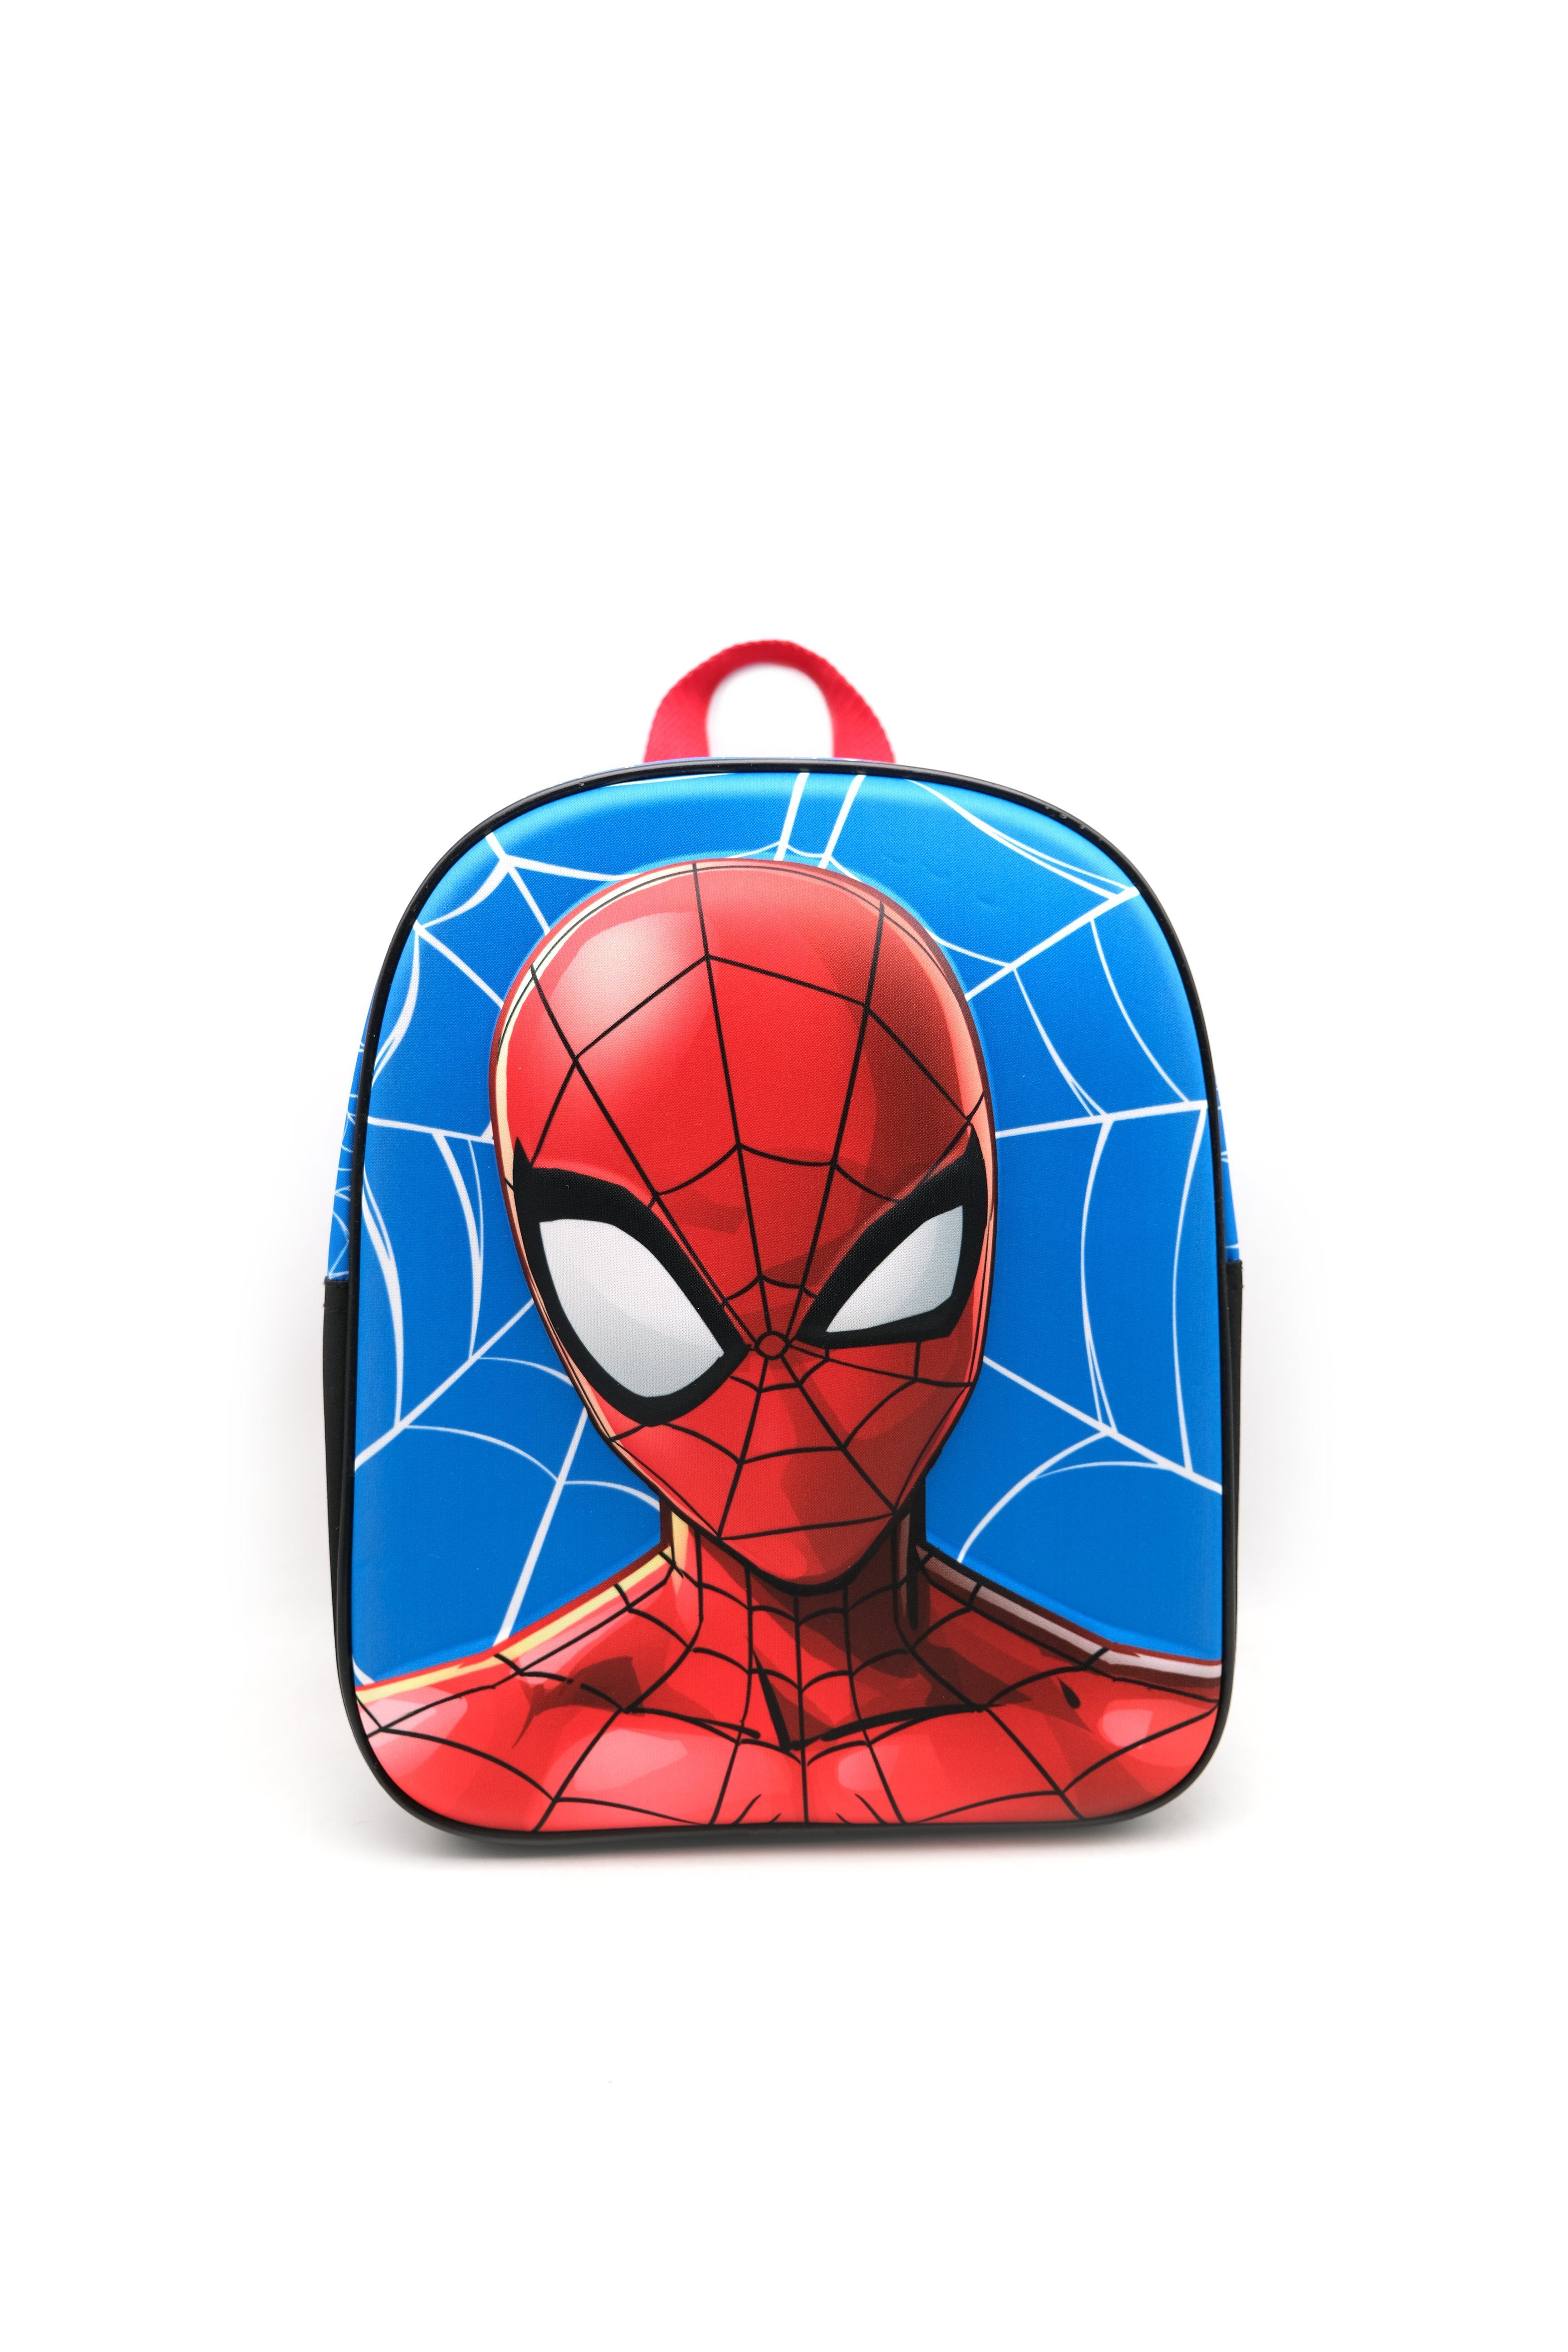 Tasche Spiderman Kleinkinderrucksack "Spiderman" EVA Kinderrucksack Schultasche 30cm